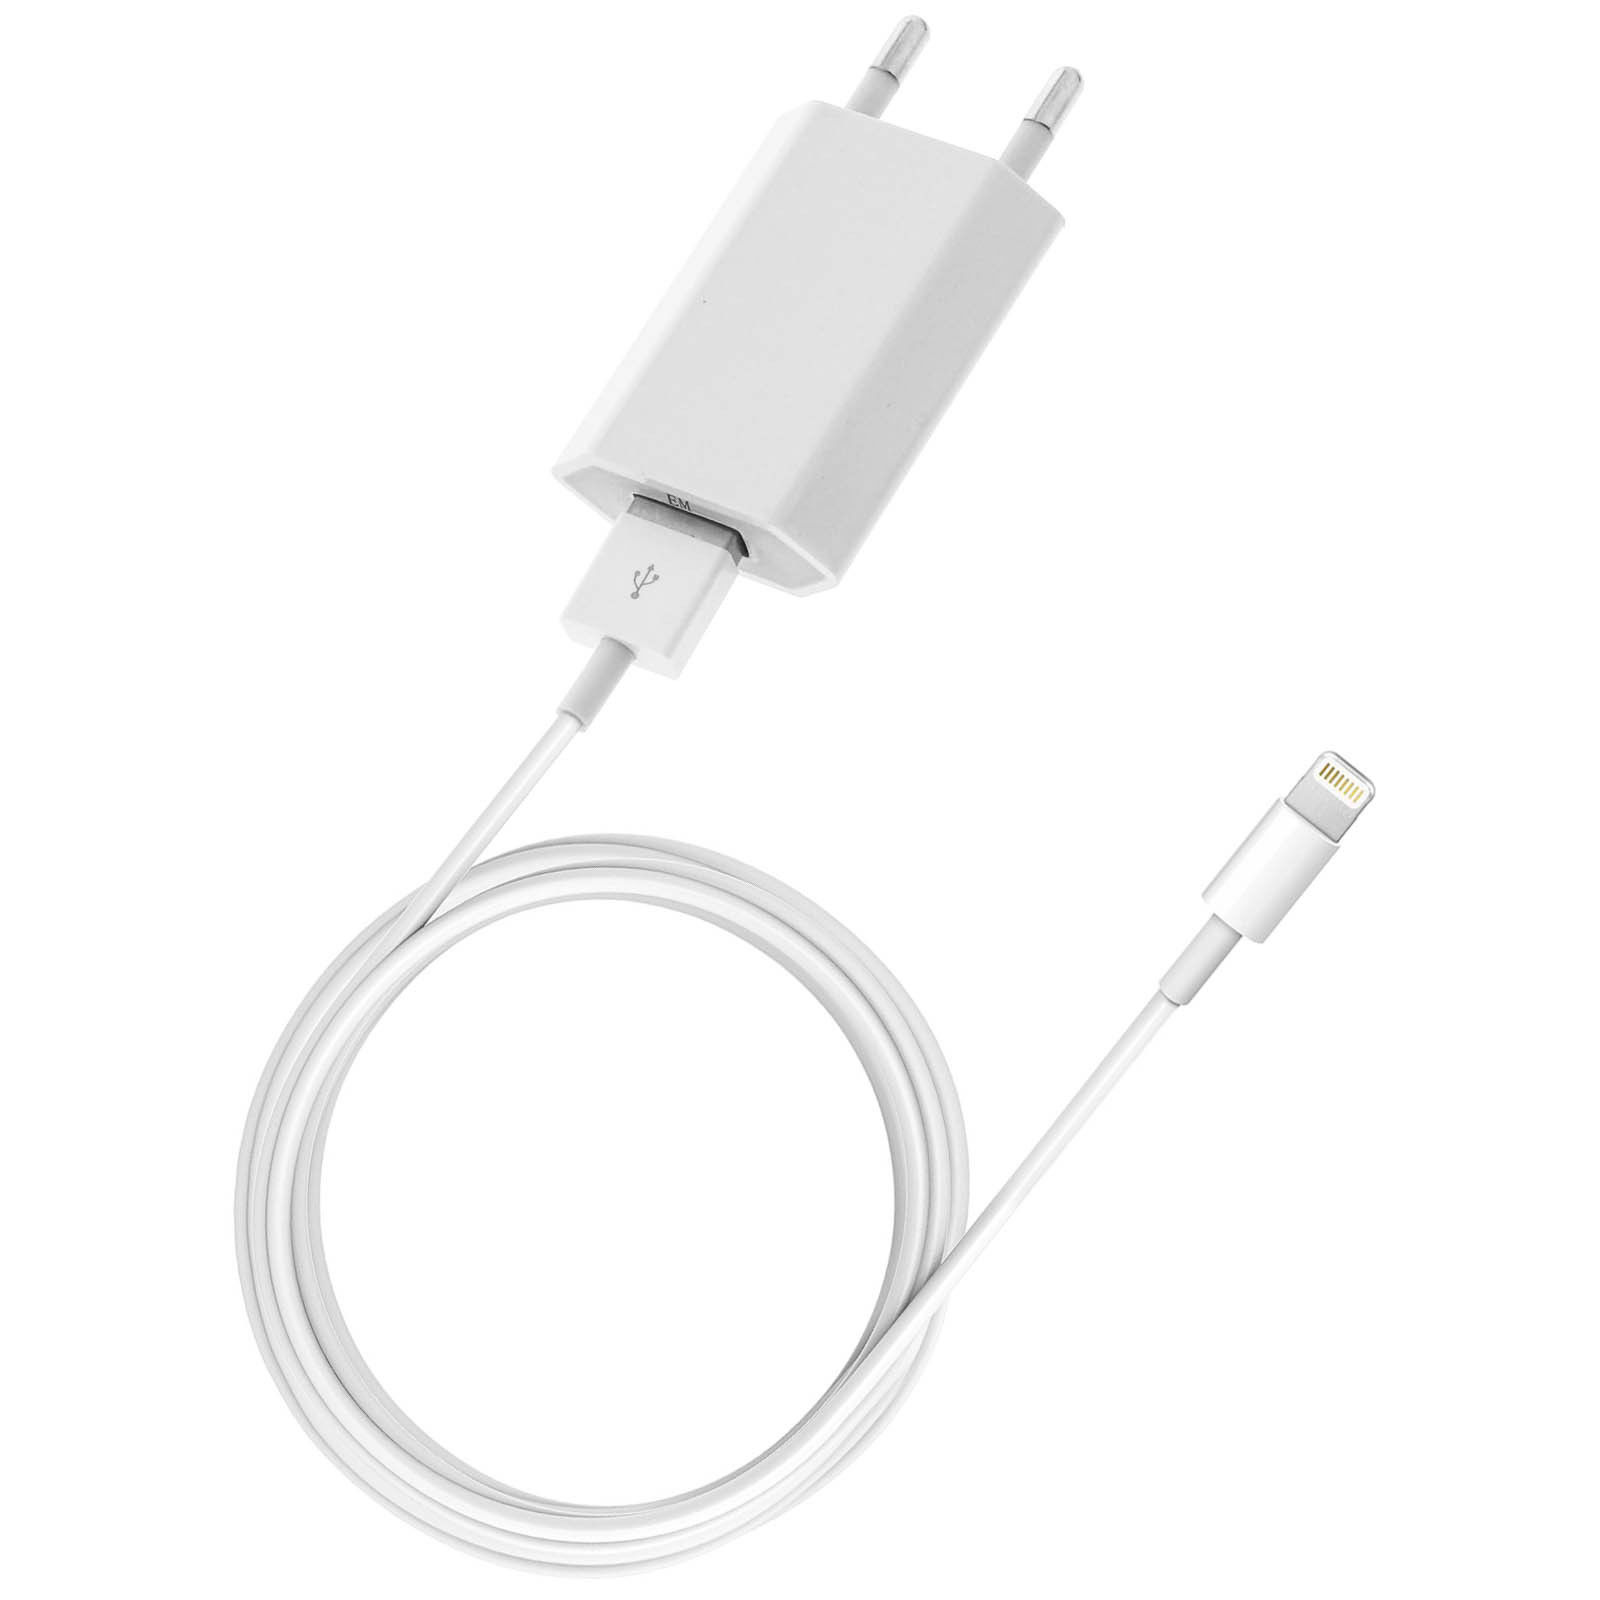 Chargeur d'origine Apple + cable pour Iphone 5 6 et Ipad mini